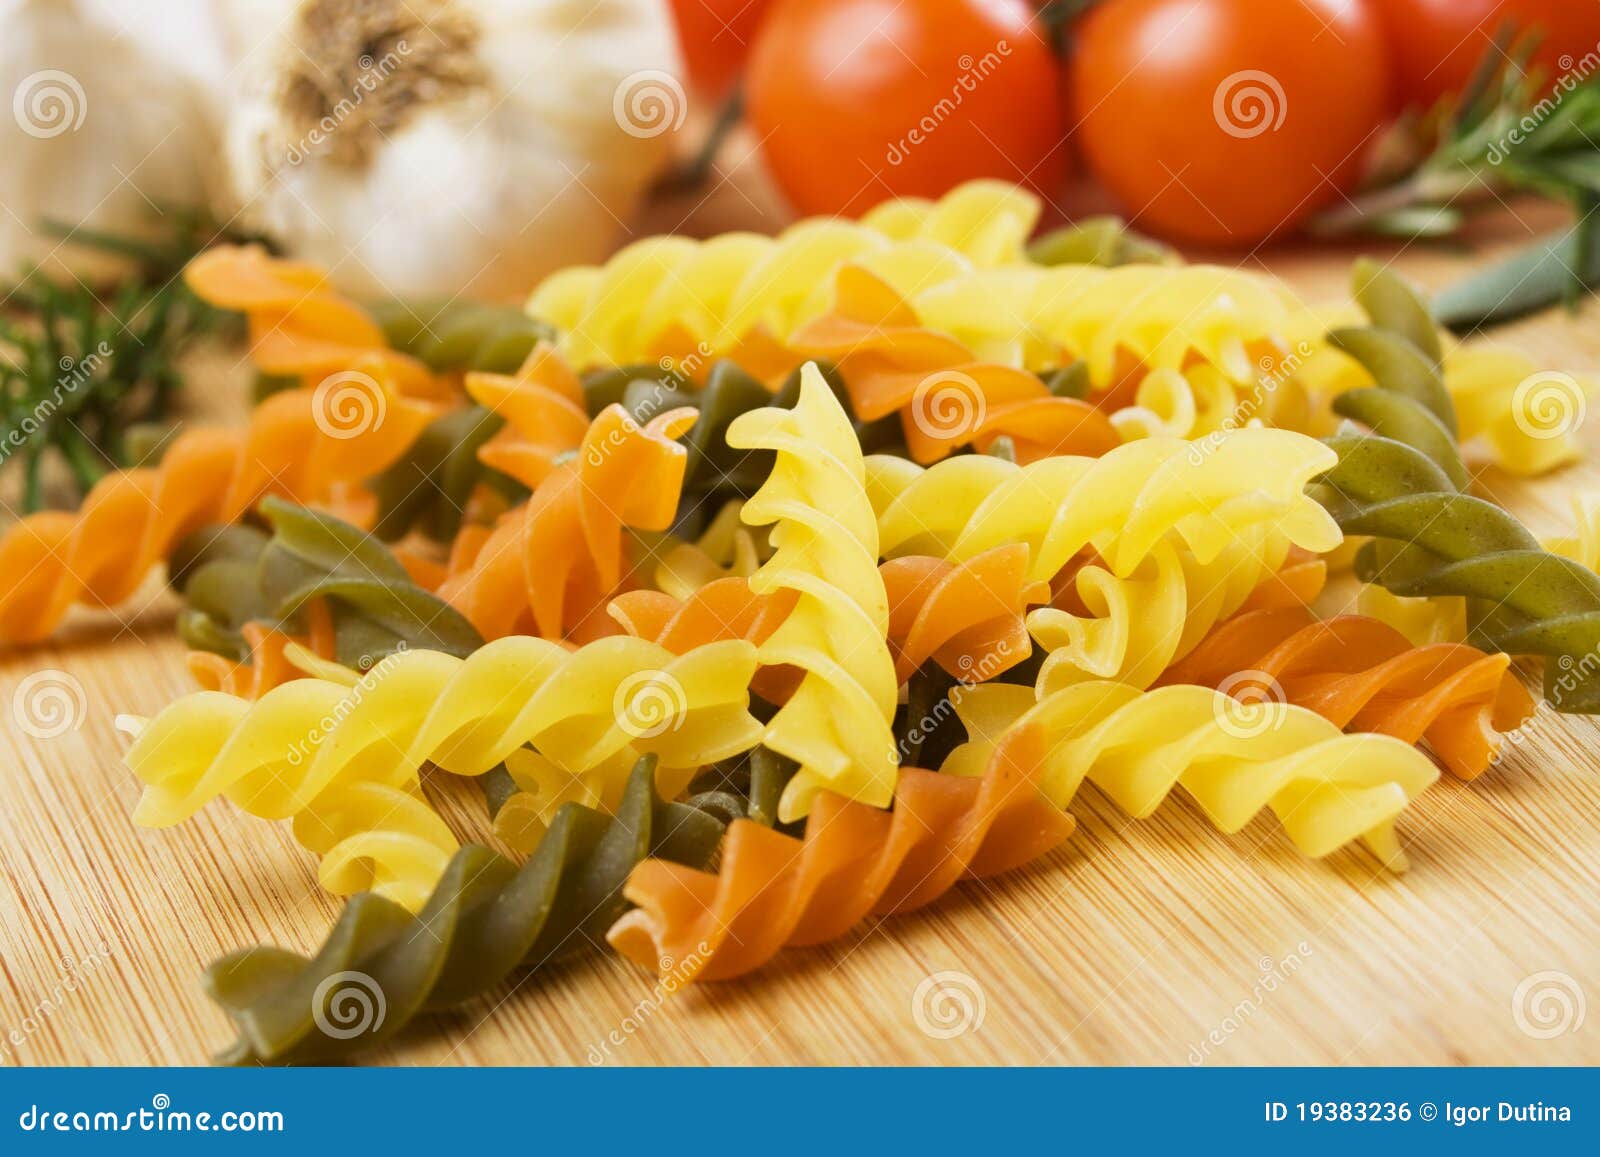 raw tricolore pasta